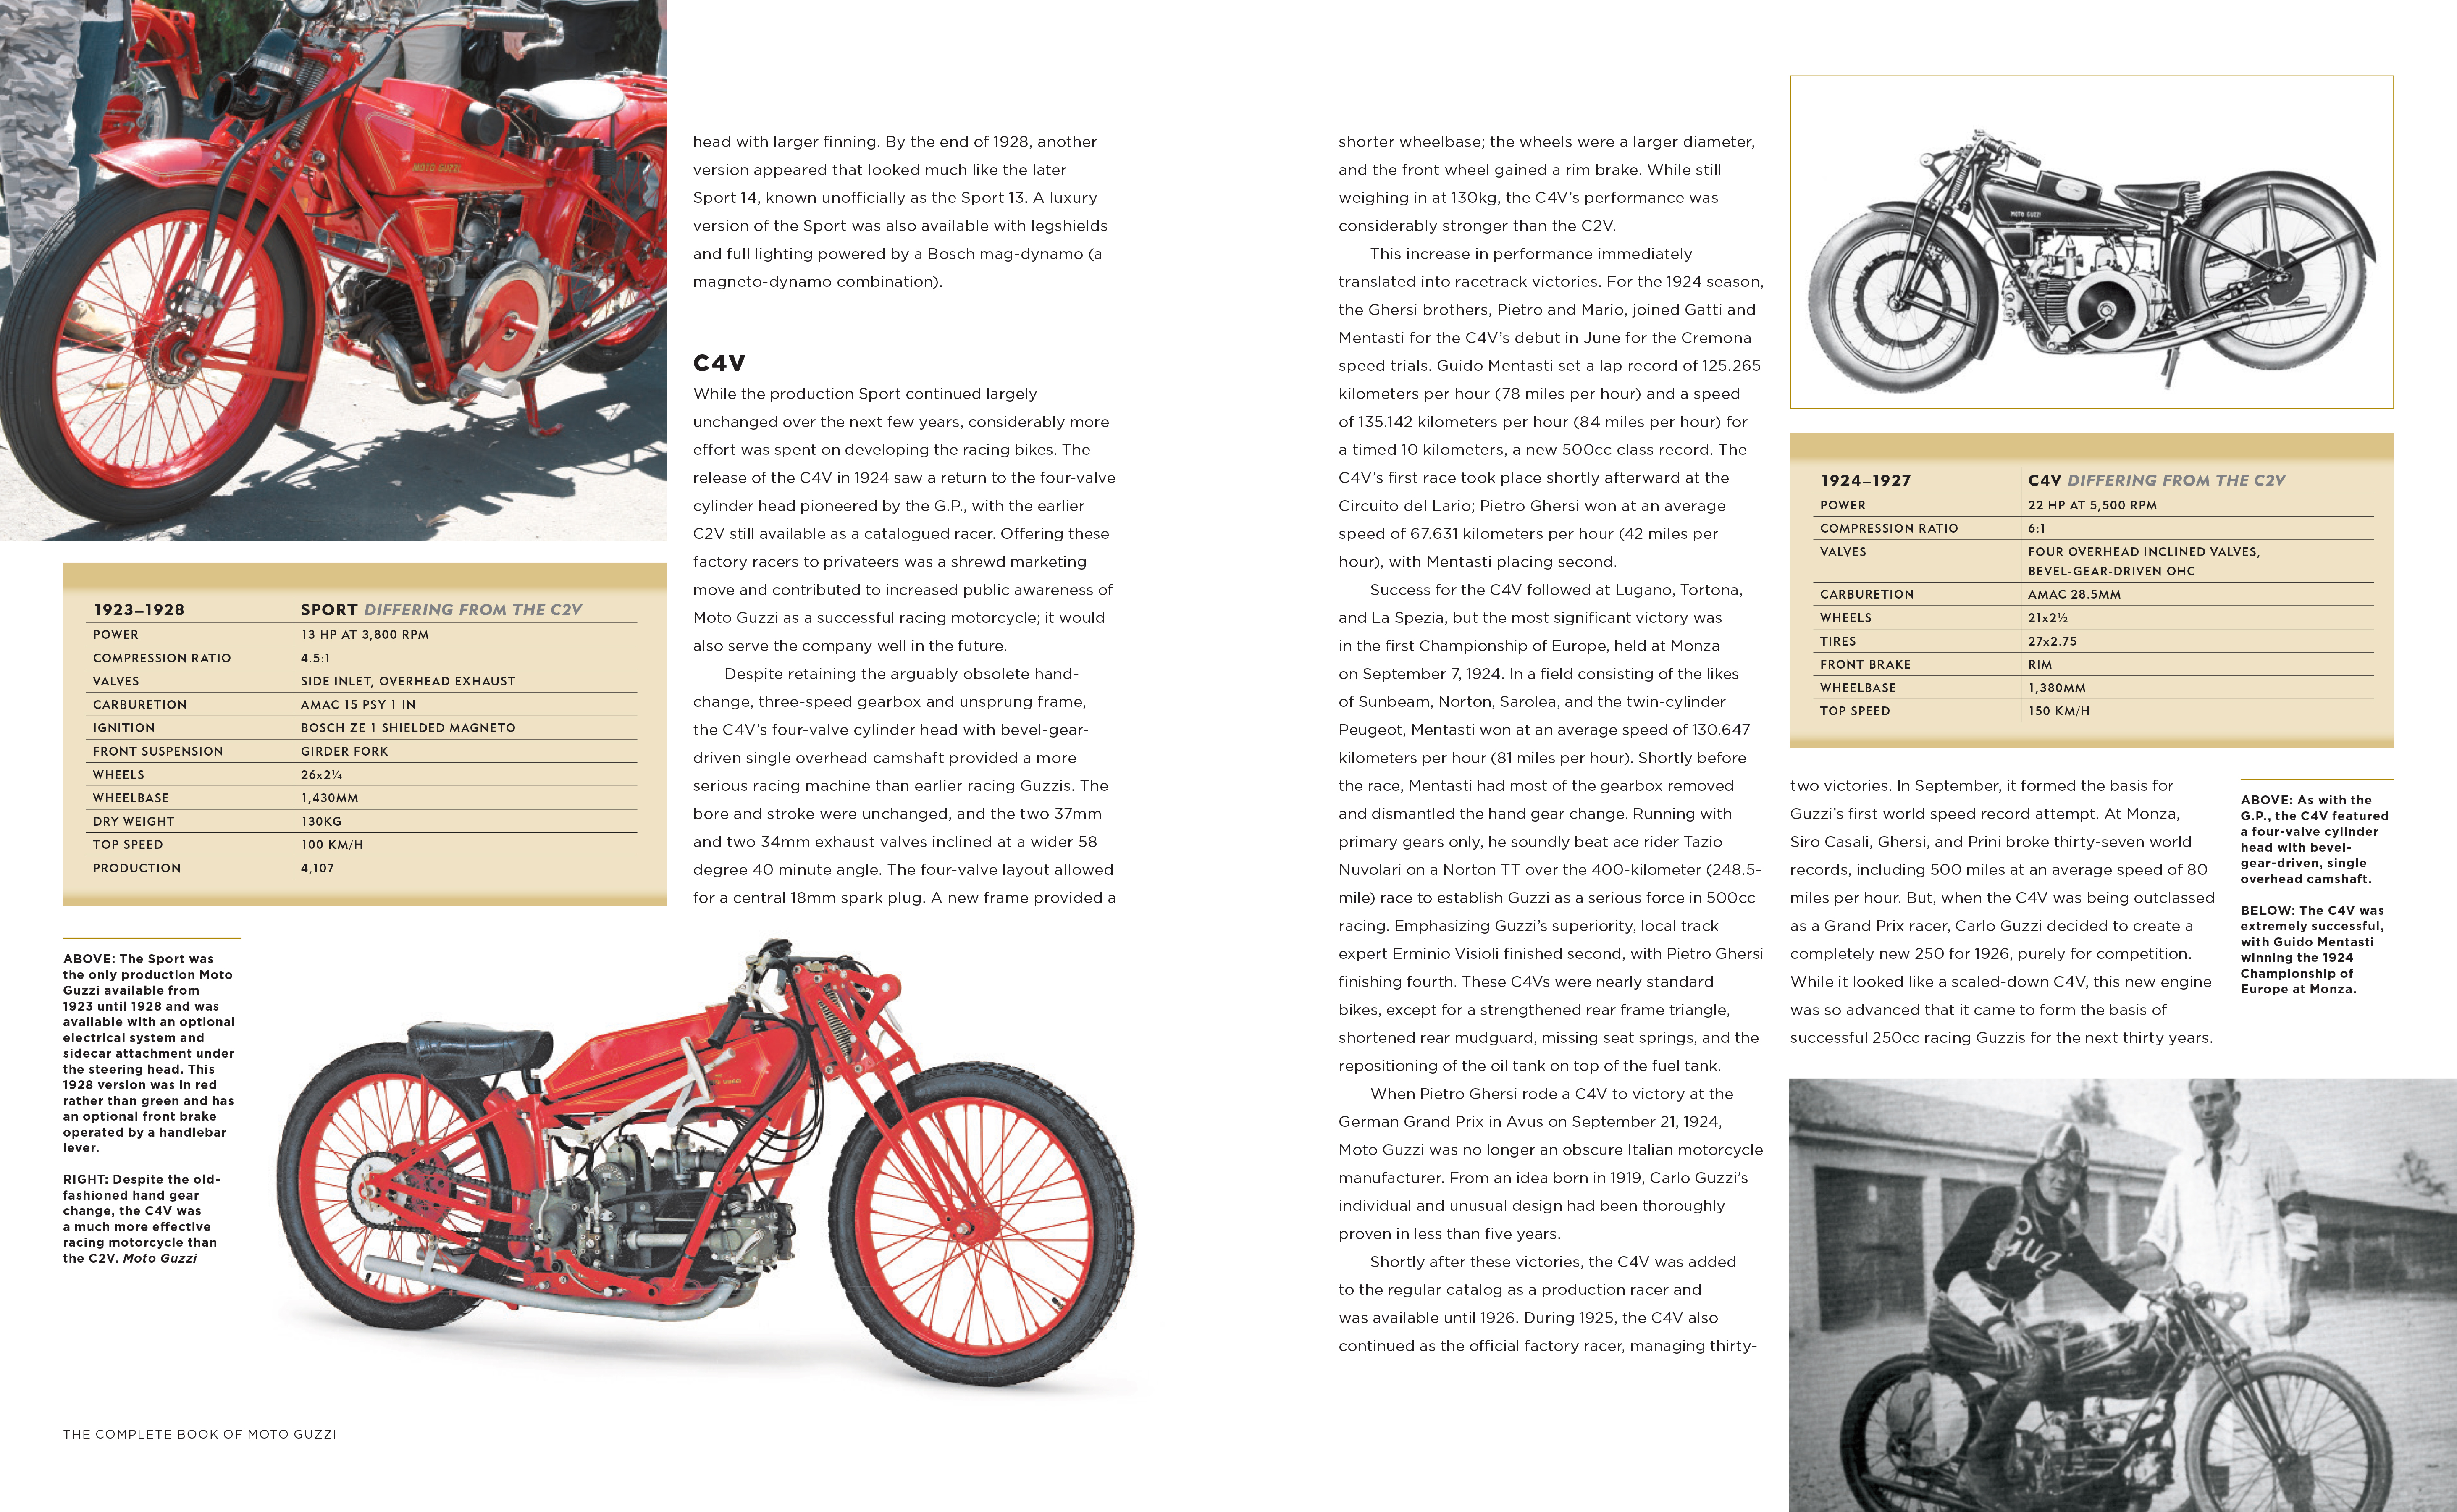 The Complete Book of Moto Guzzi